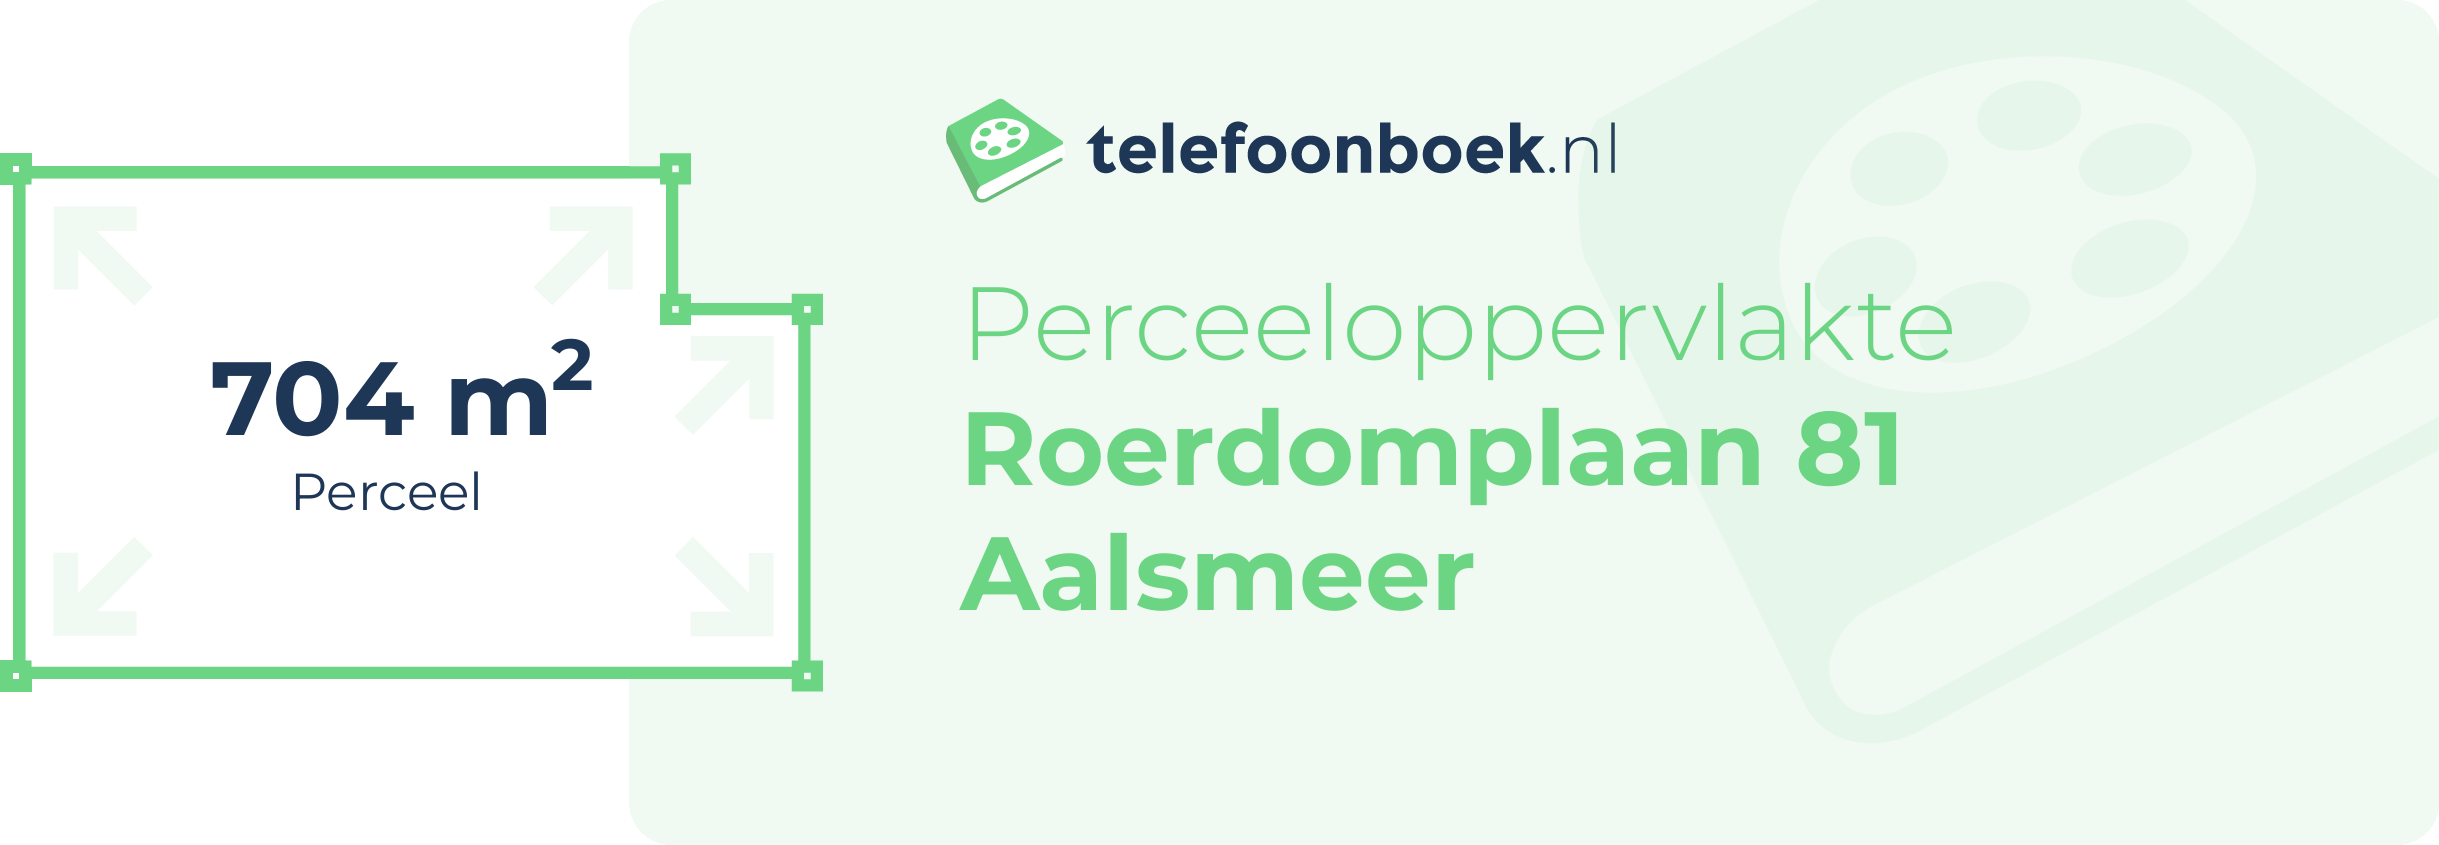 Perceeloppervlakte Roerdomplaan 81 Aalsmeer